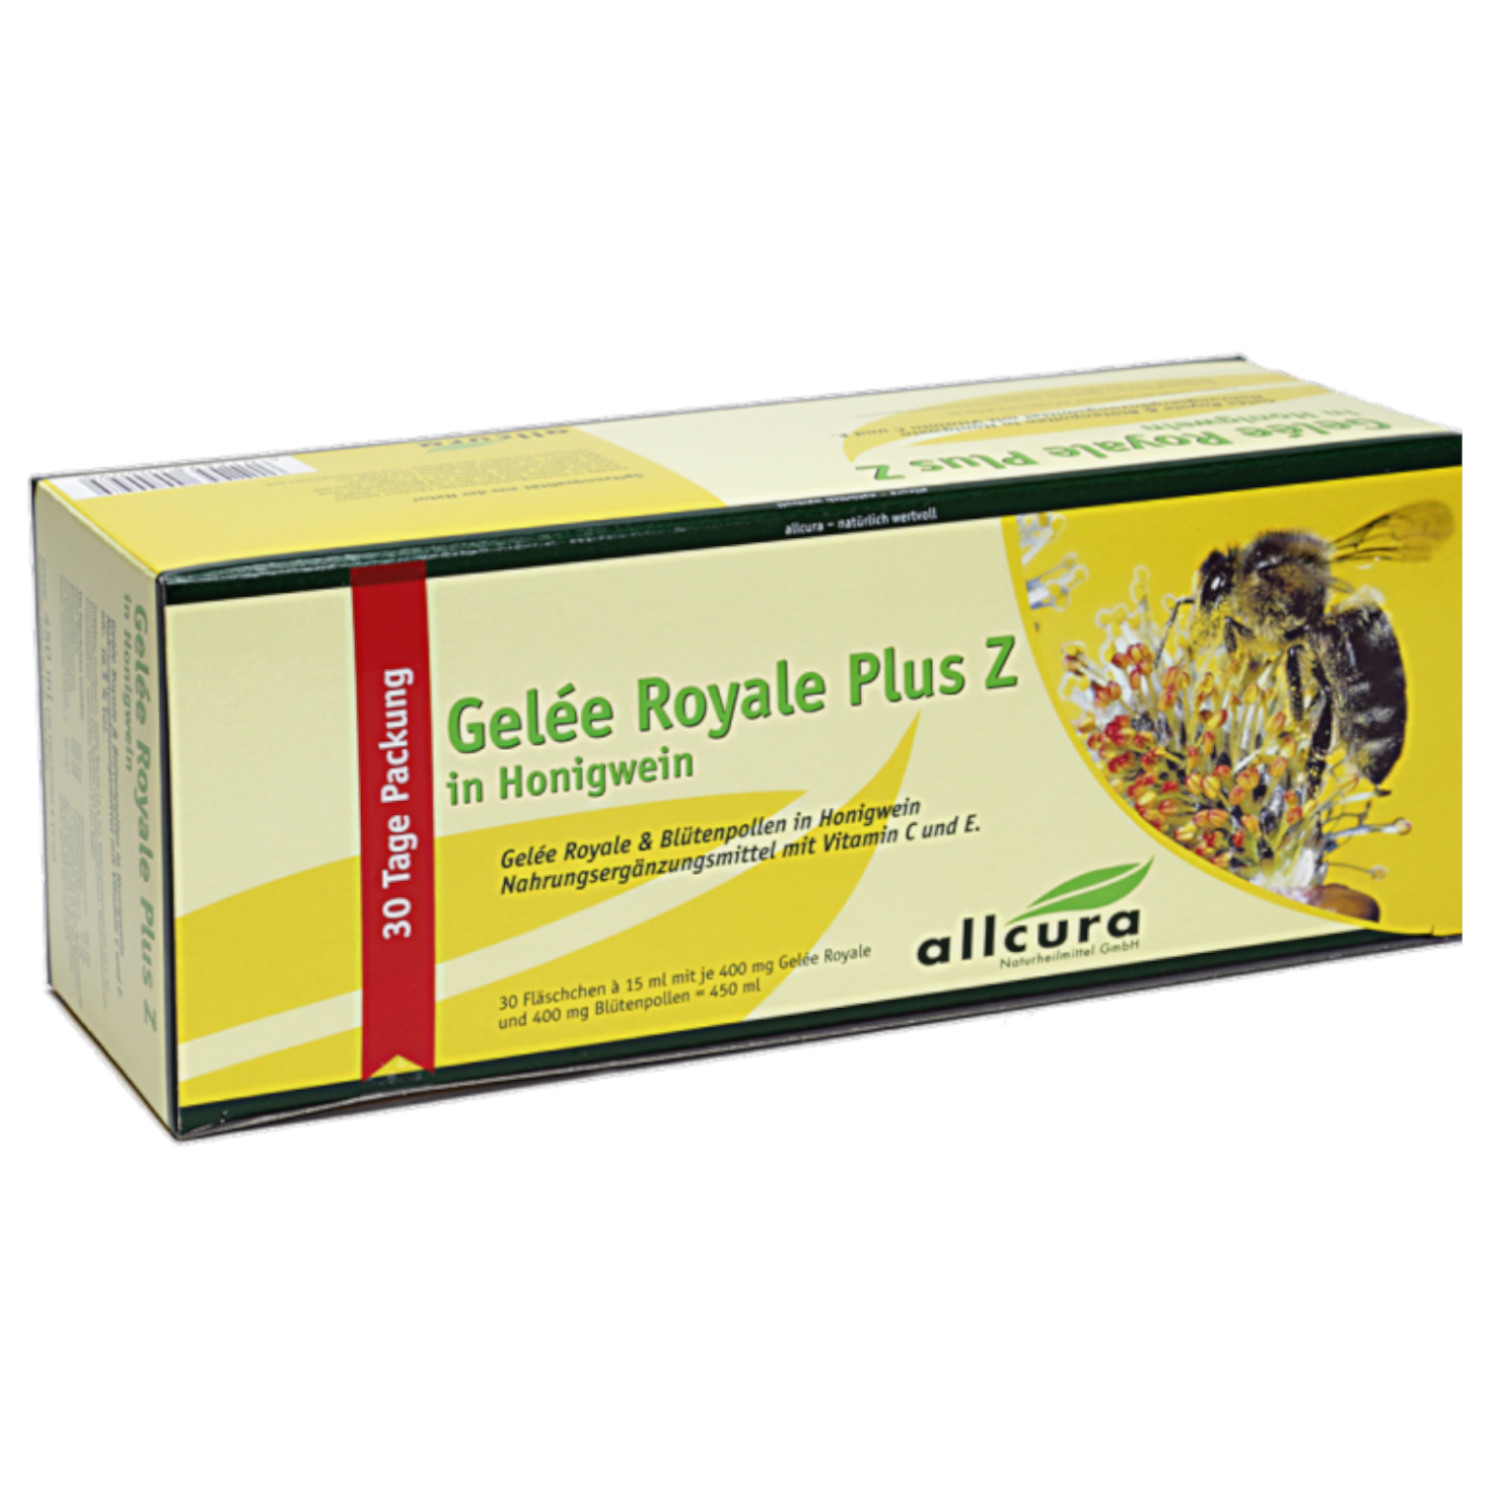 Gelee Royal+Z in Honigwein von Allcura - 30 Fl. à 400mg 